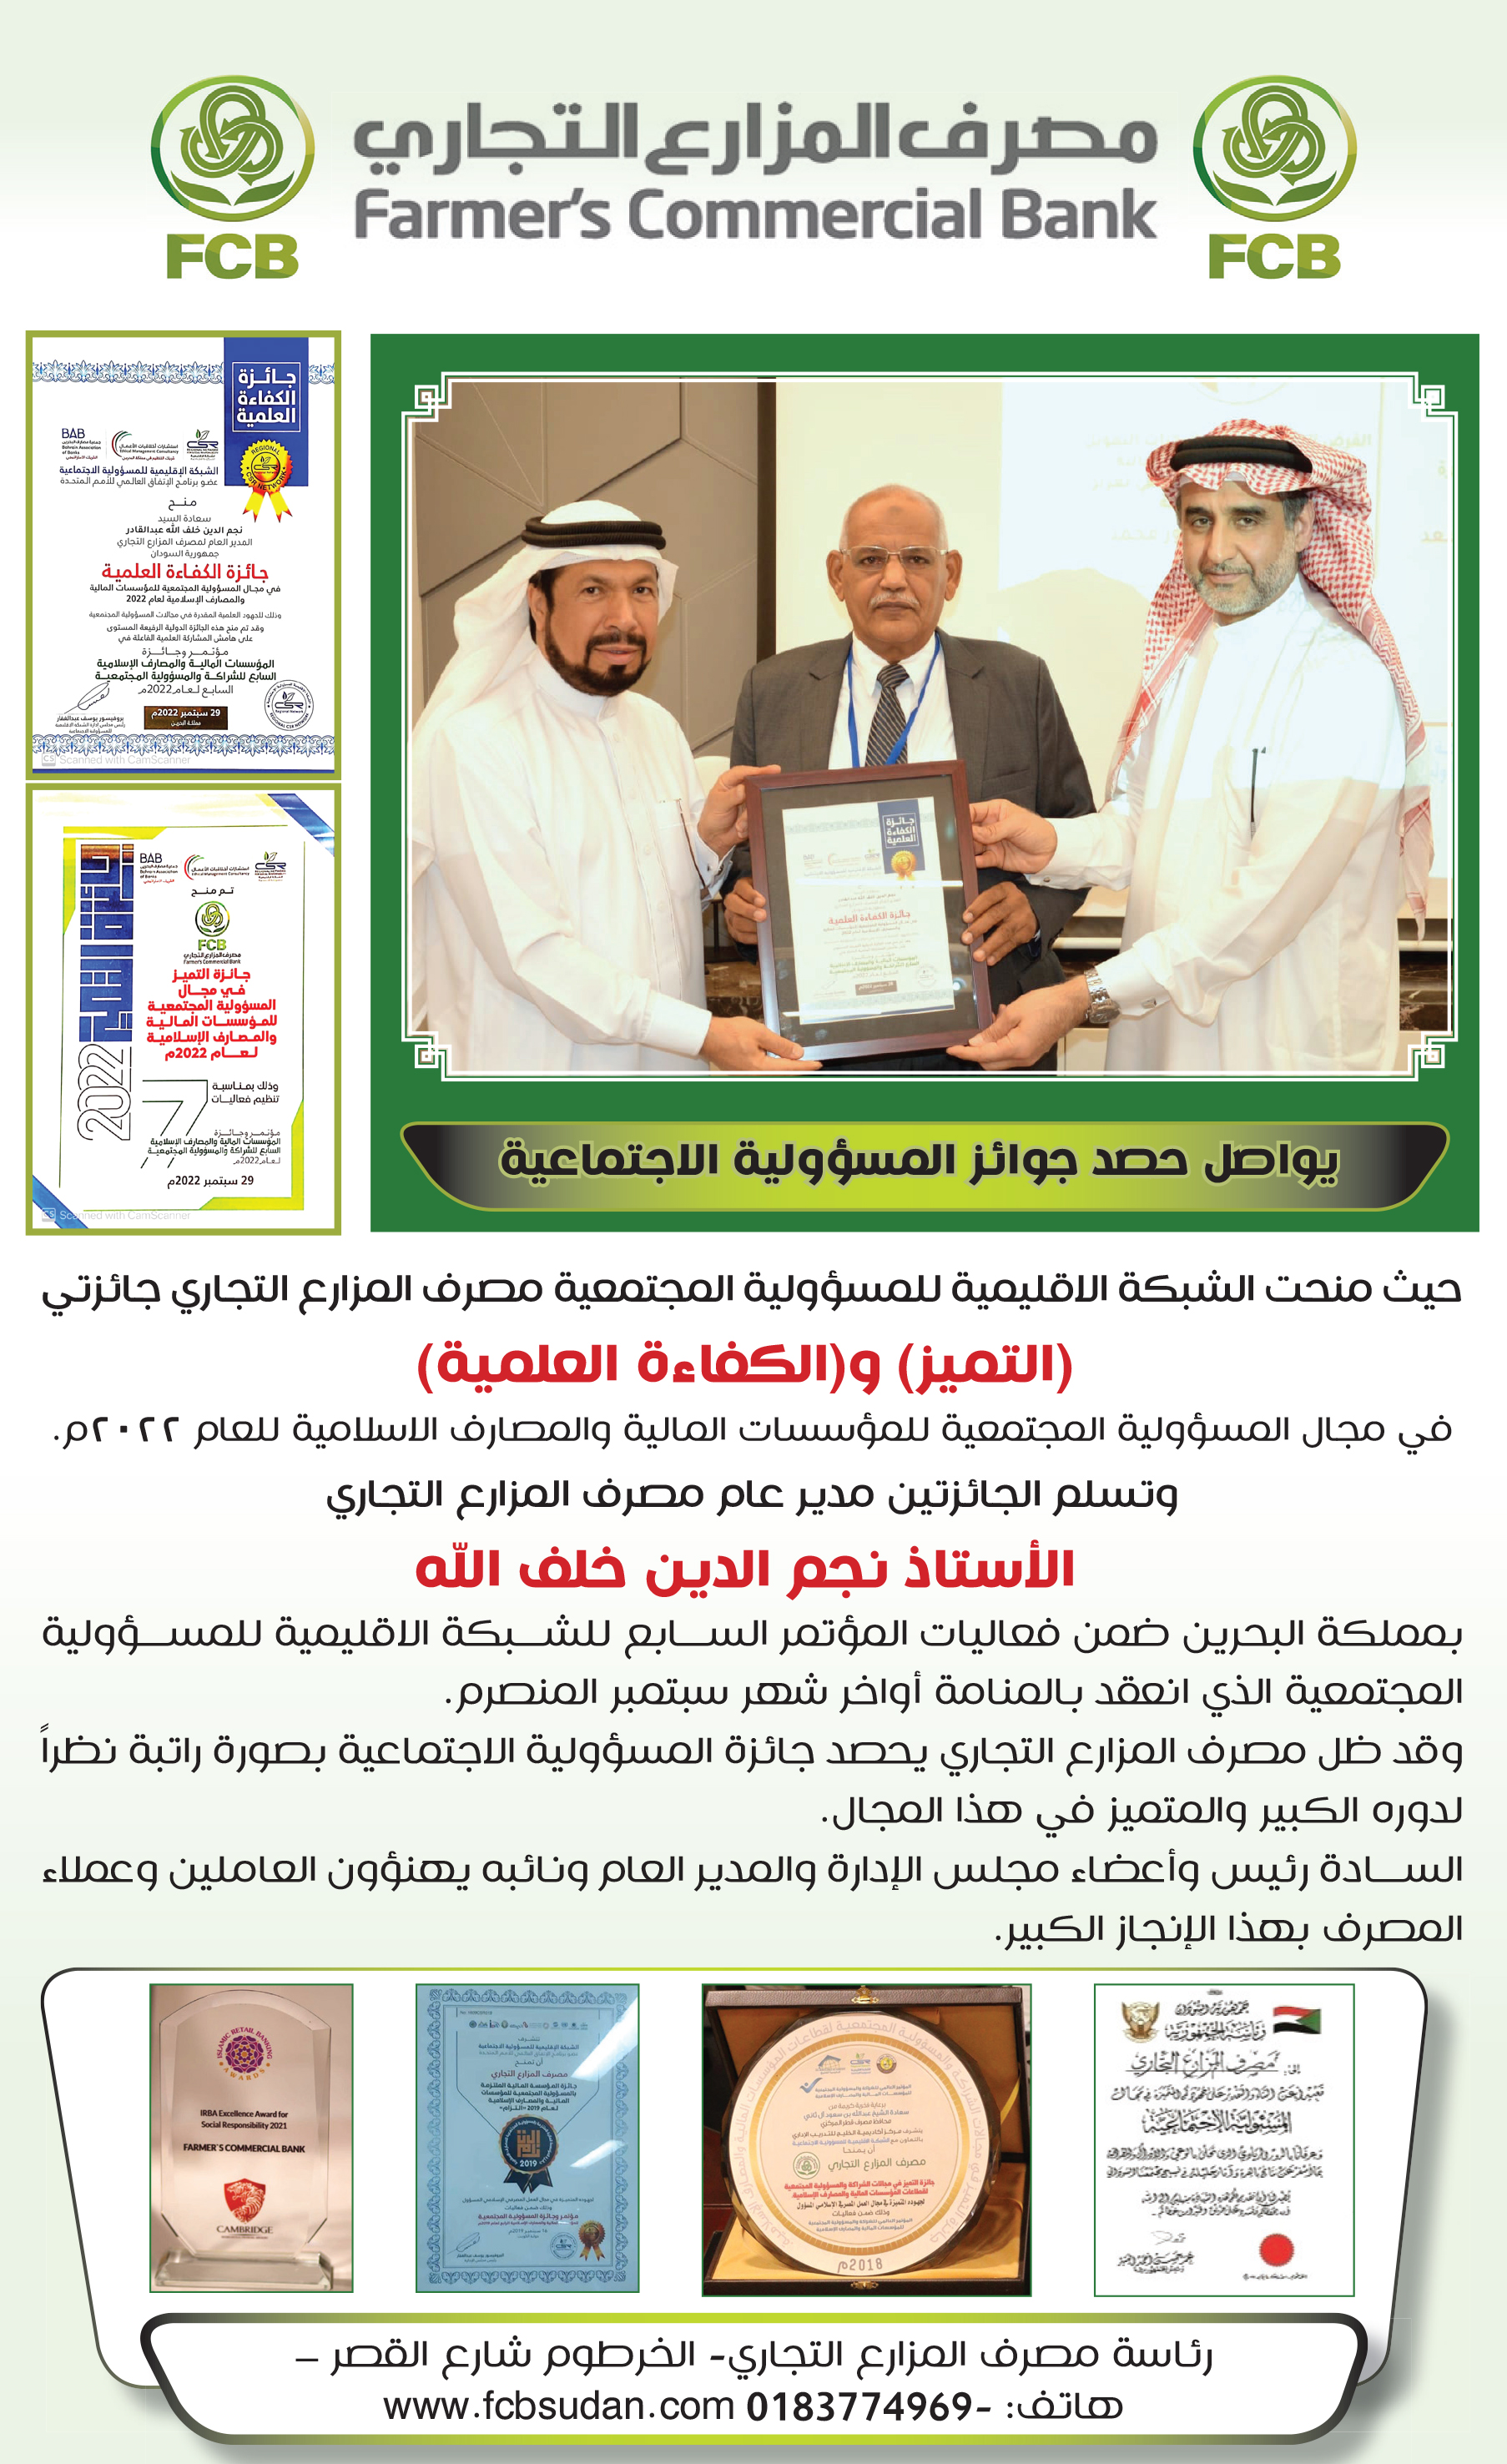 جائزة التميز في مجال المسئولية المجتمعية للمؤسسات الماليه والمصارف الإسلامية للعام 2022